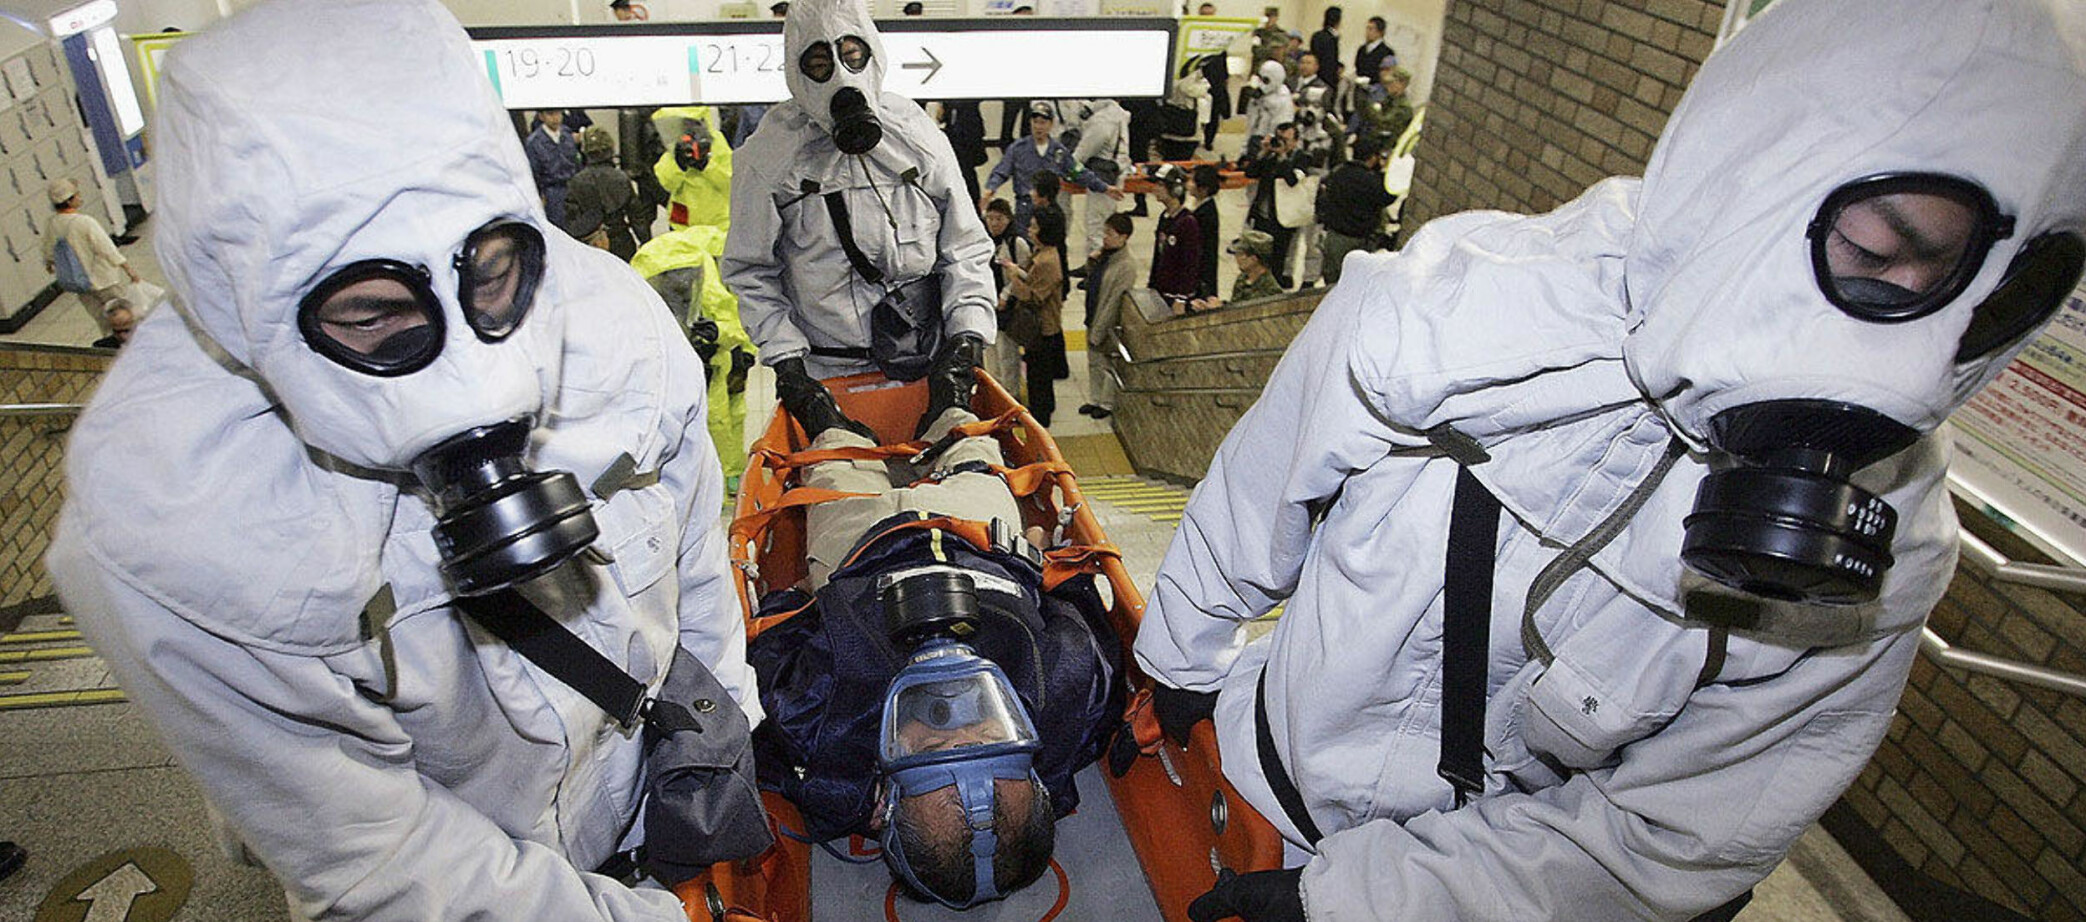 Menn i beskyttelsesdrakter bærer en skadet person i en antiterrorøvelse på Onomiya-stasjonen i Tokyo i 2005. Øvelsen var basert på det samme scenariet som sarinangrepet ti år tidligere.